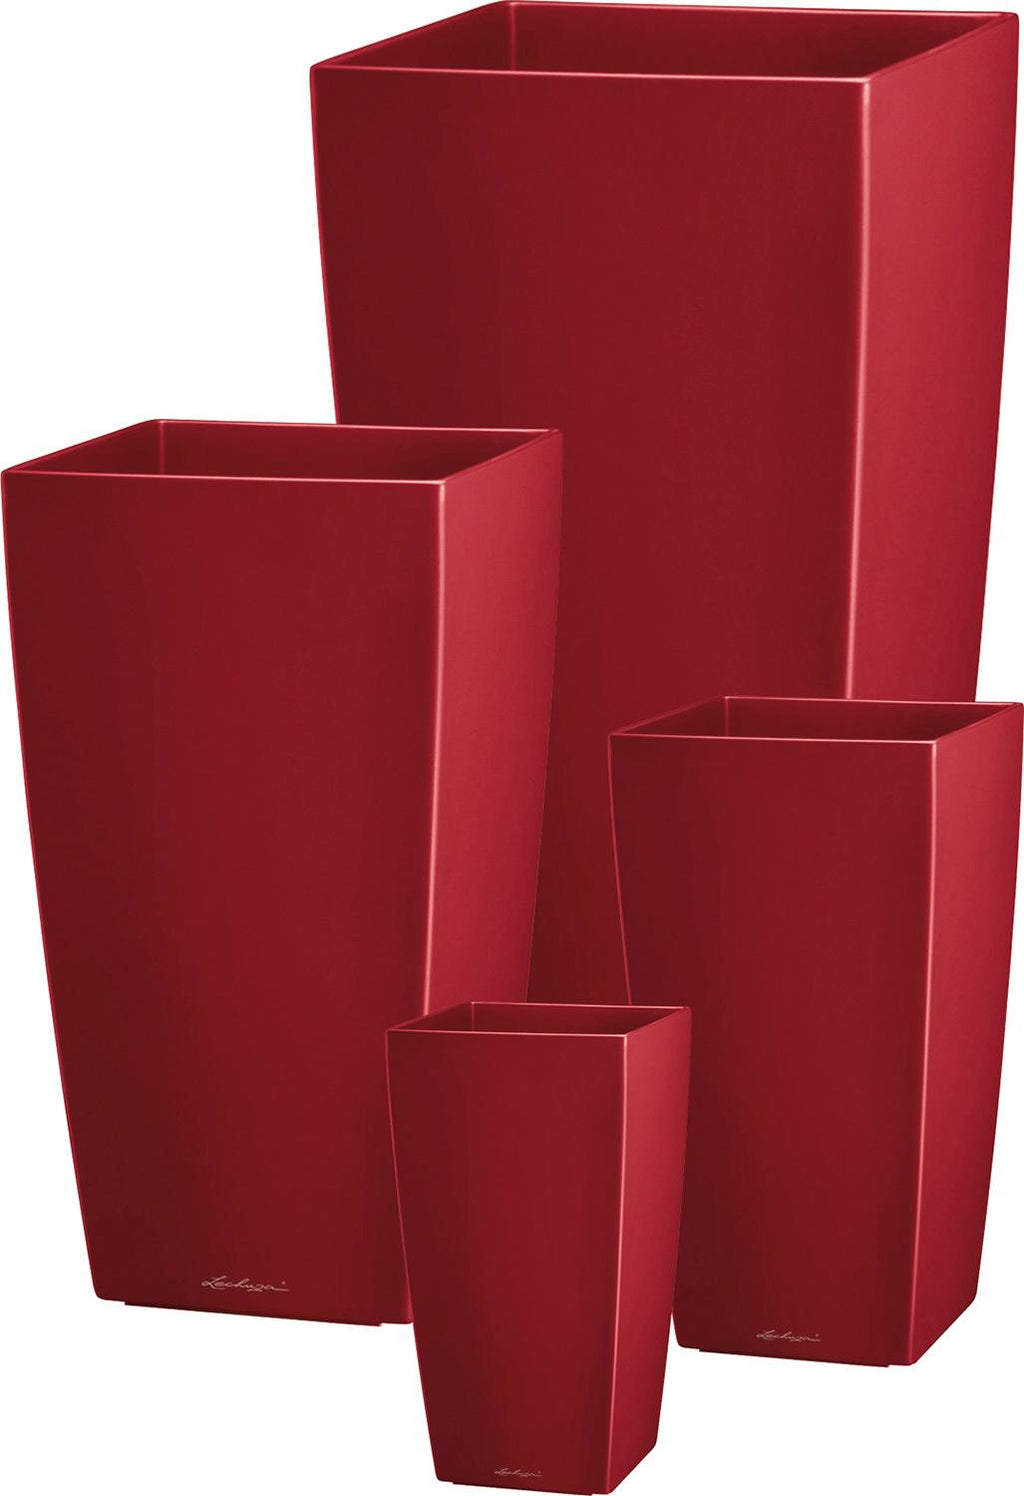 CUBICO plantering, 22x22/41 cm, röd